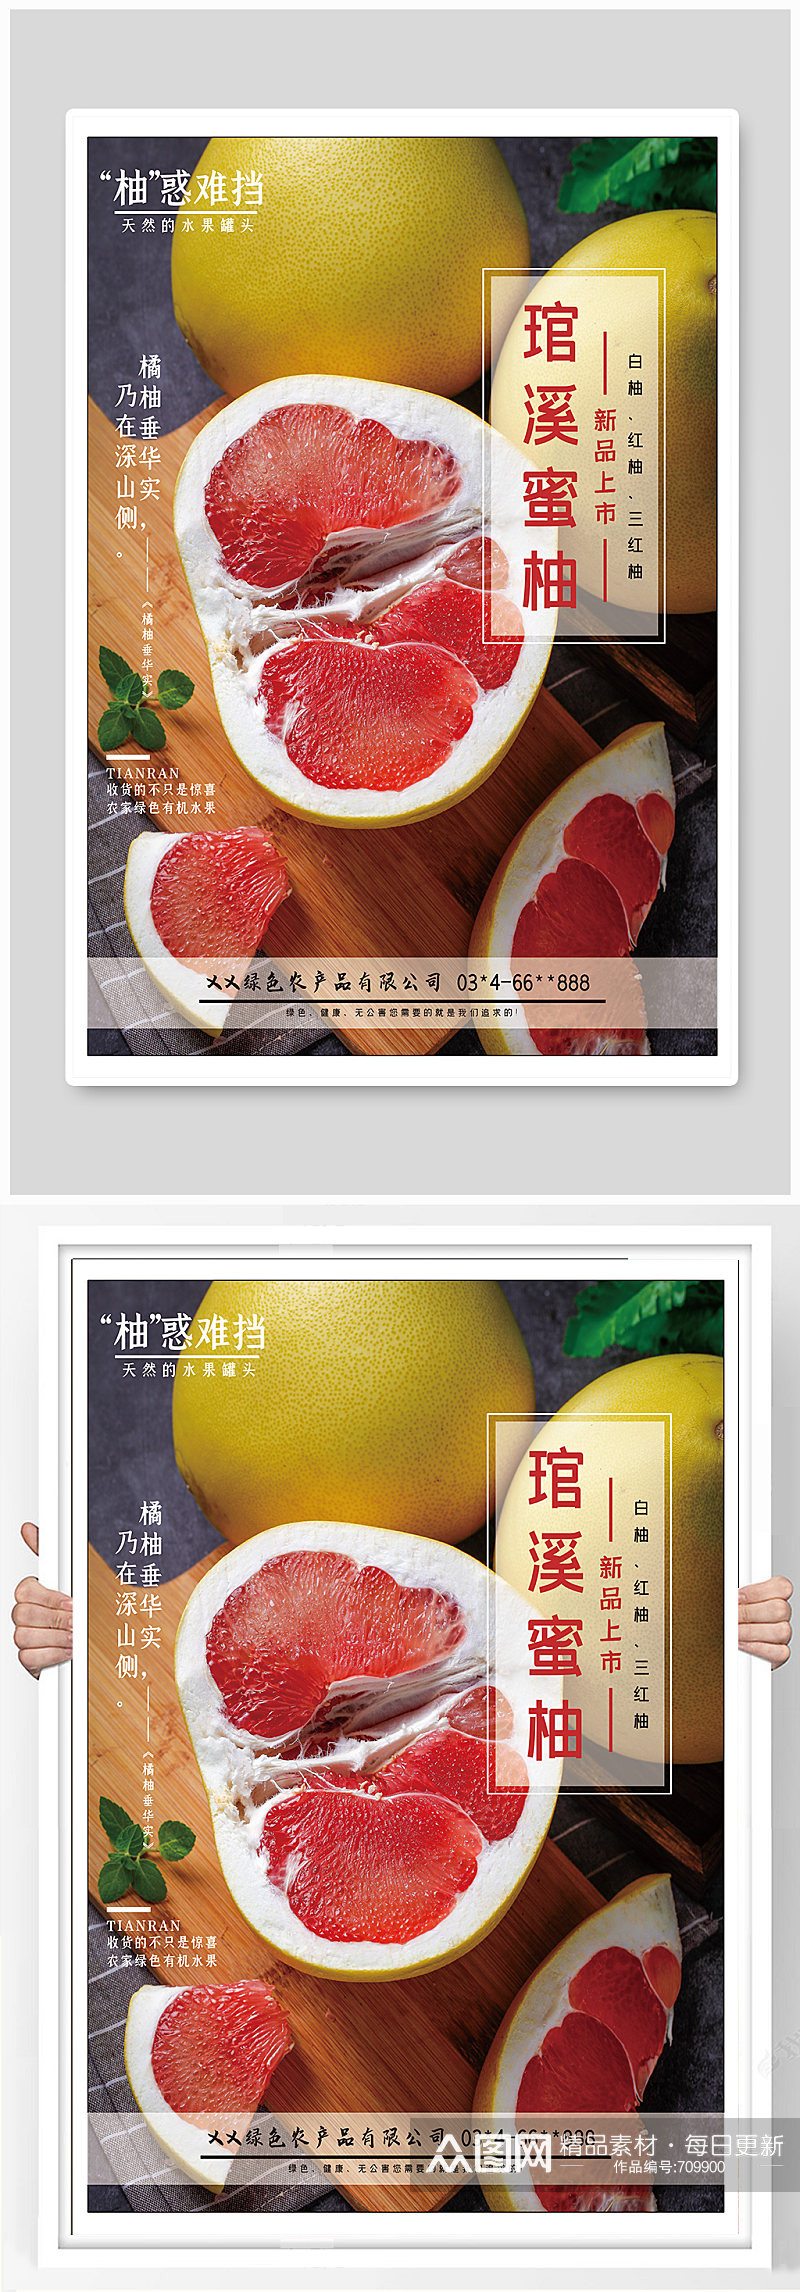 鲜蔬菜水果蜜柚农产品促销 柚子海报素材